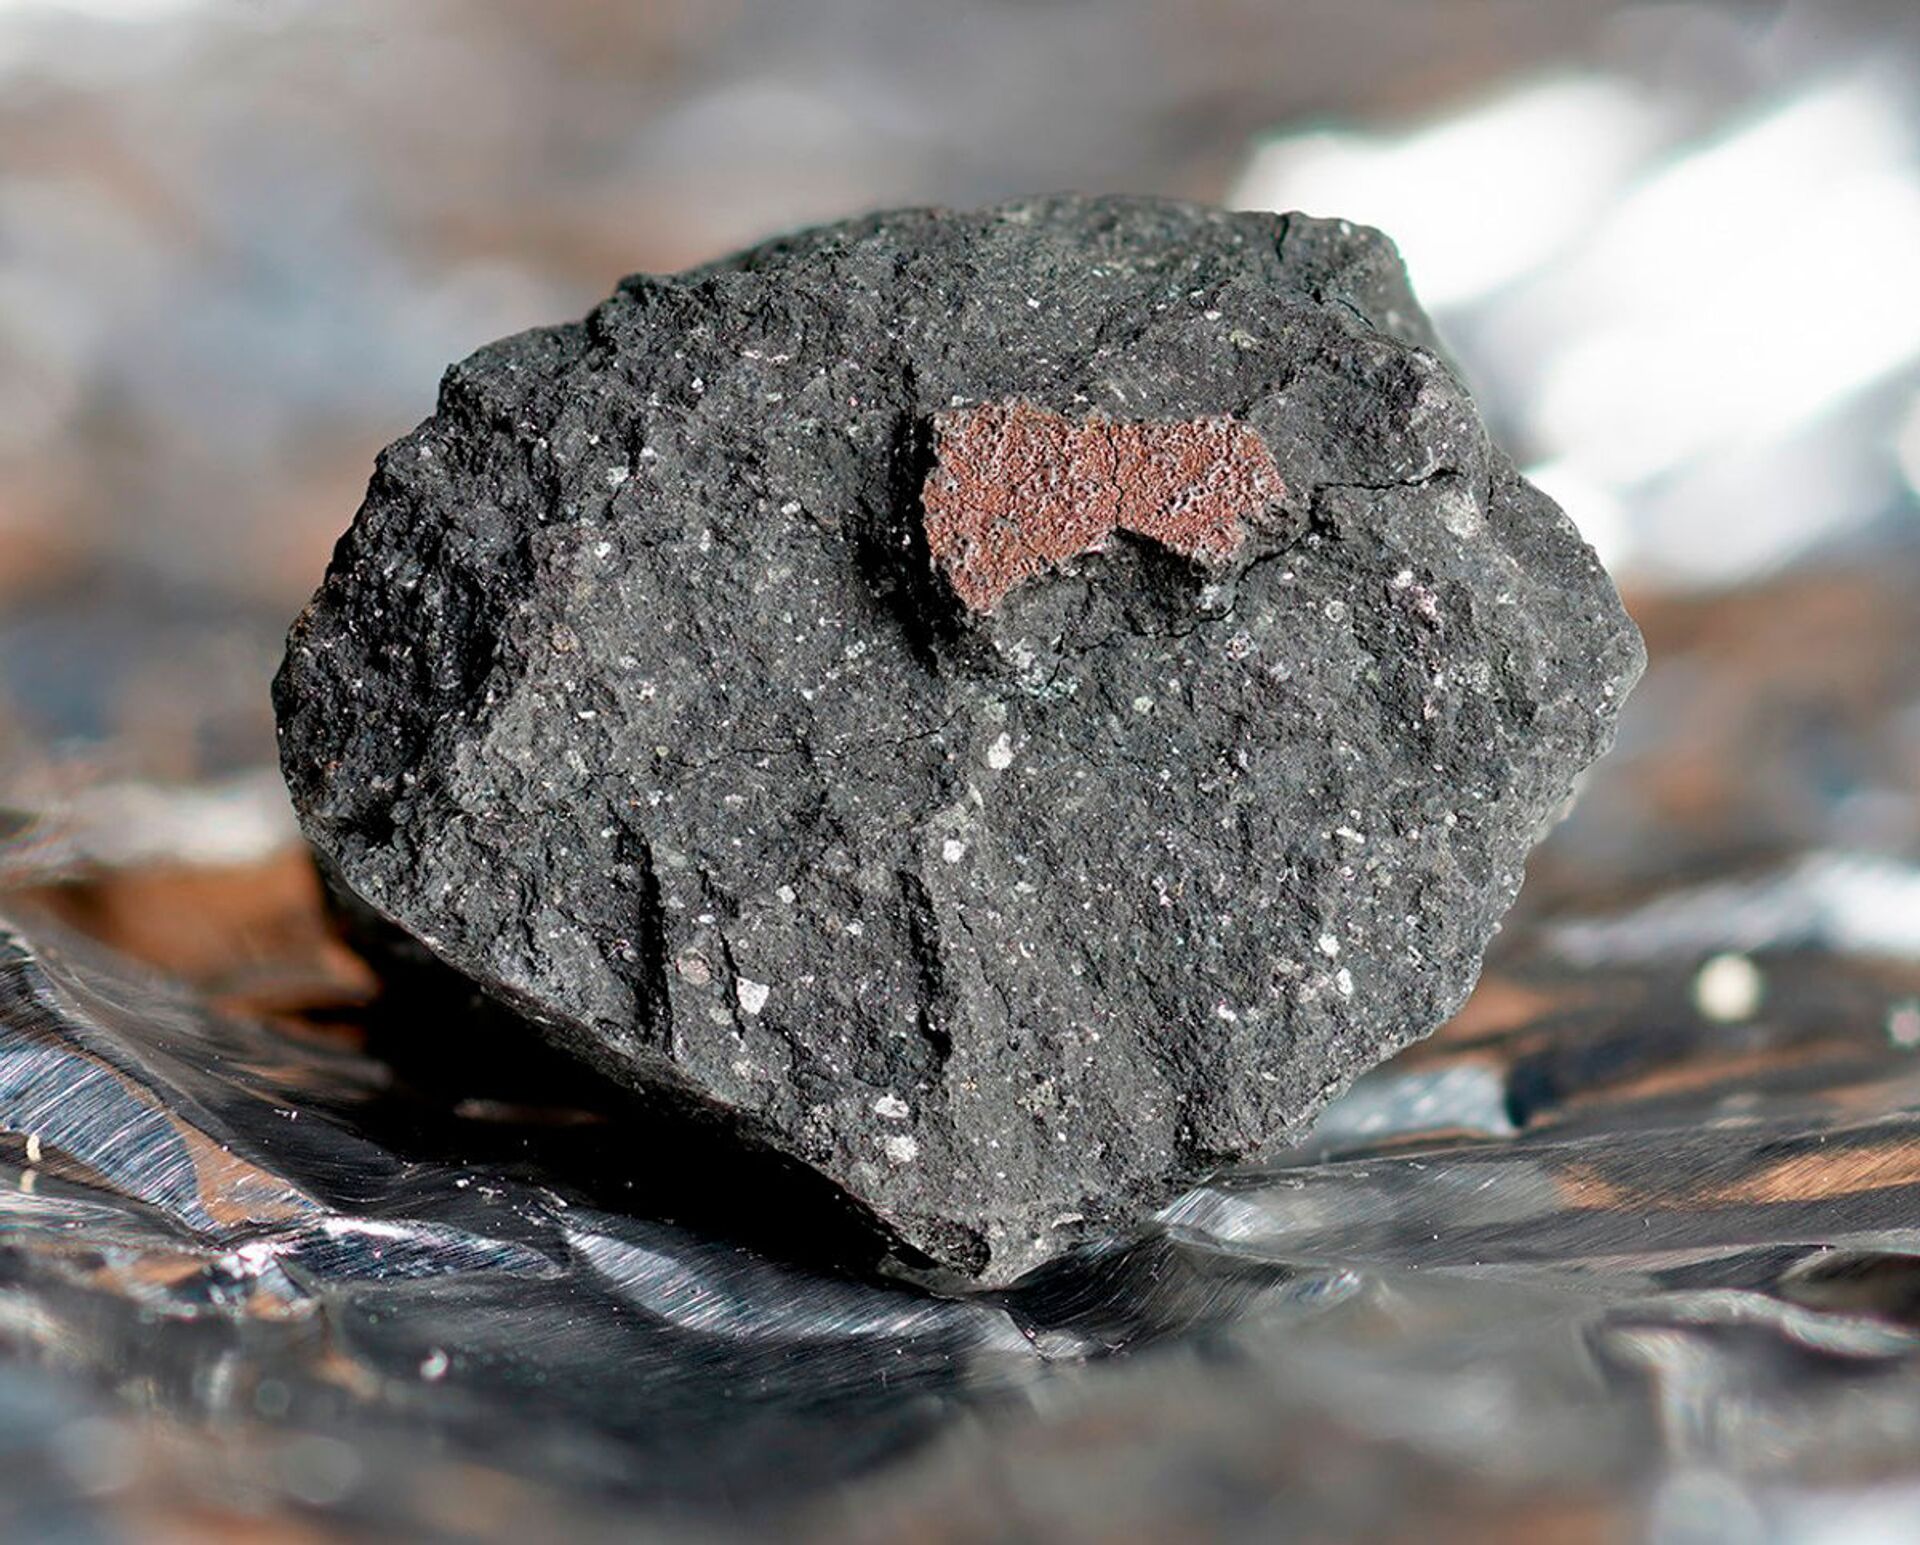 Meteorito recém-descoberto no Reino Unido participou de etapa precoce do Sistema Solar (FOTO) - Sputnik Brasil, 1920, 09.03.2021